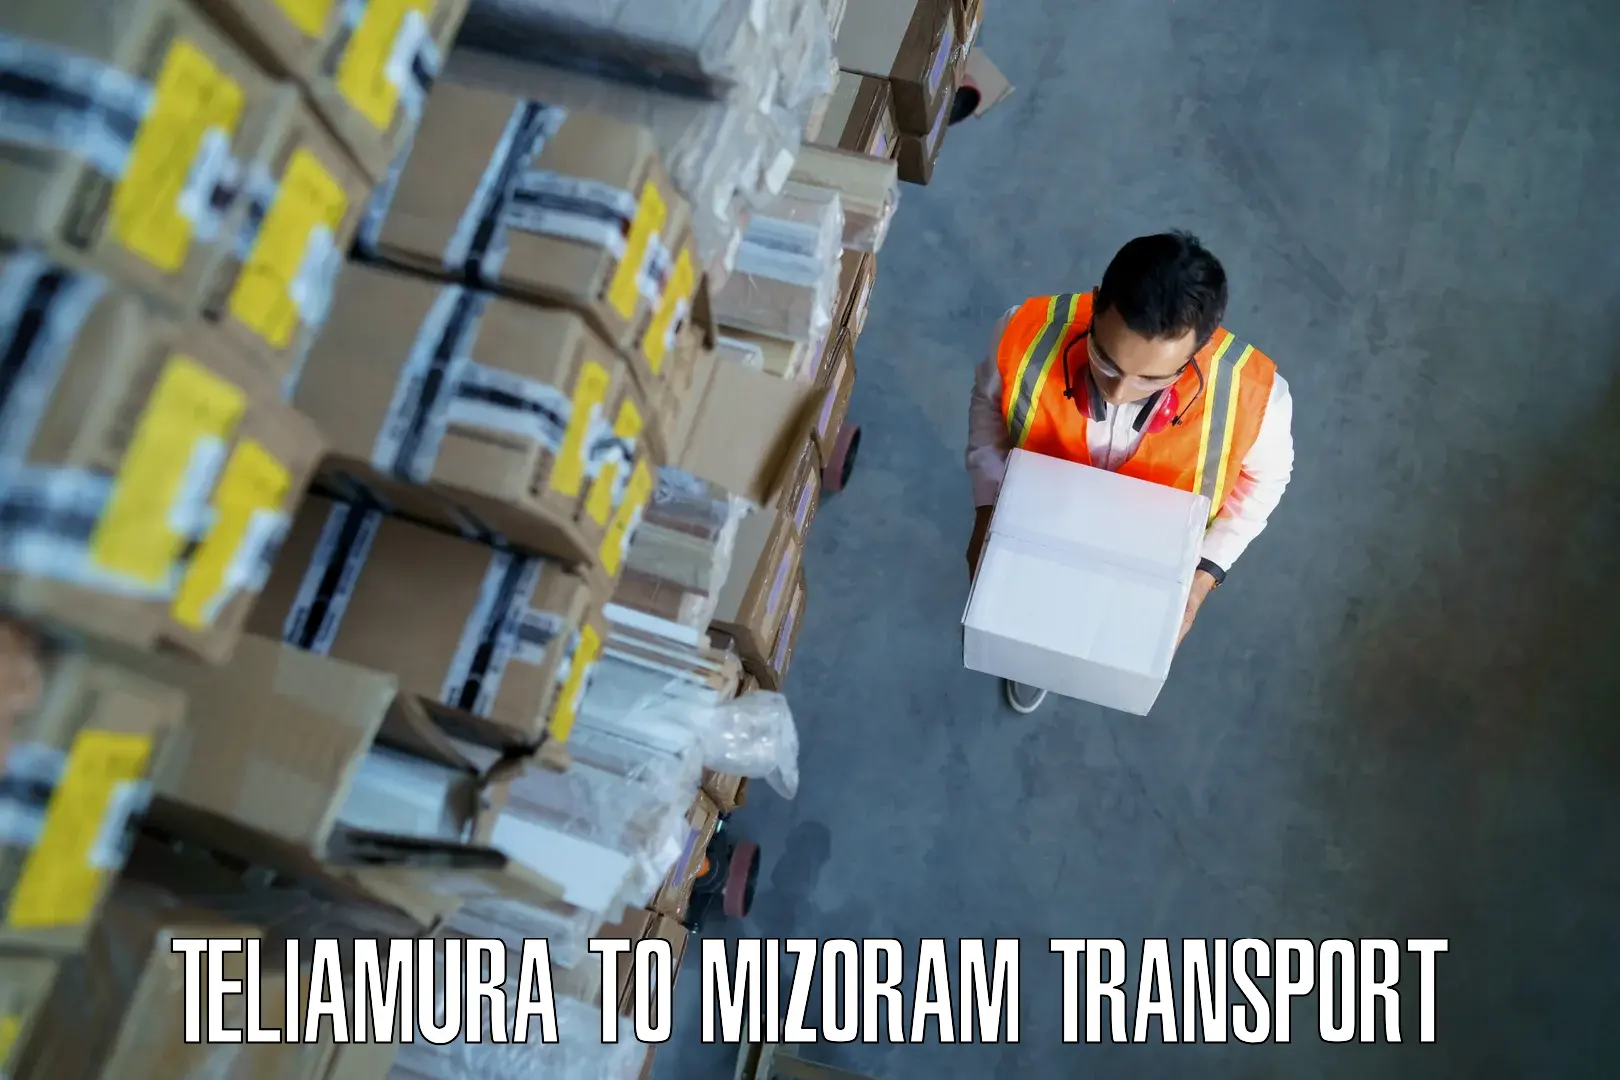 Road transport online services Teliamura to Mizoram